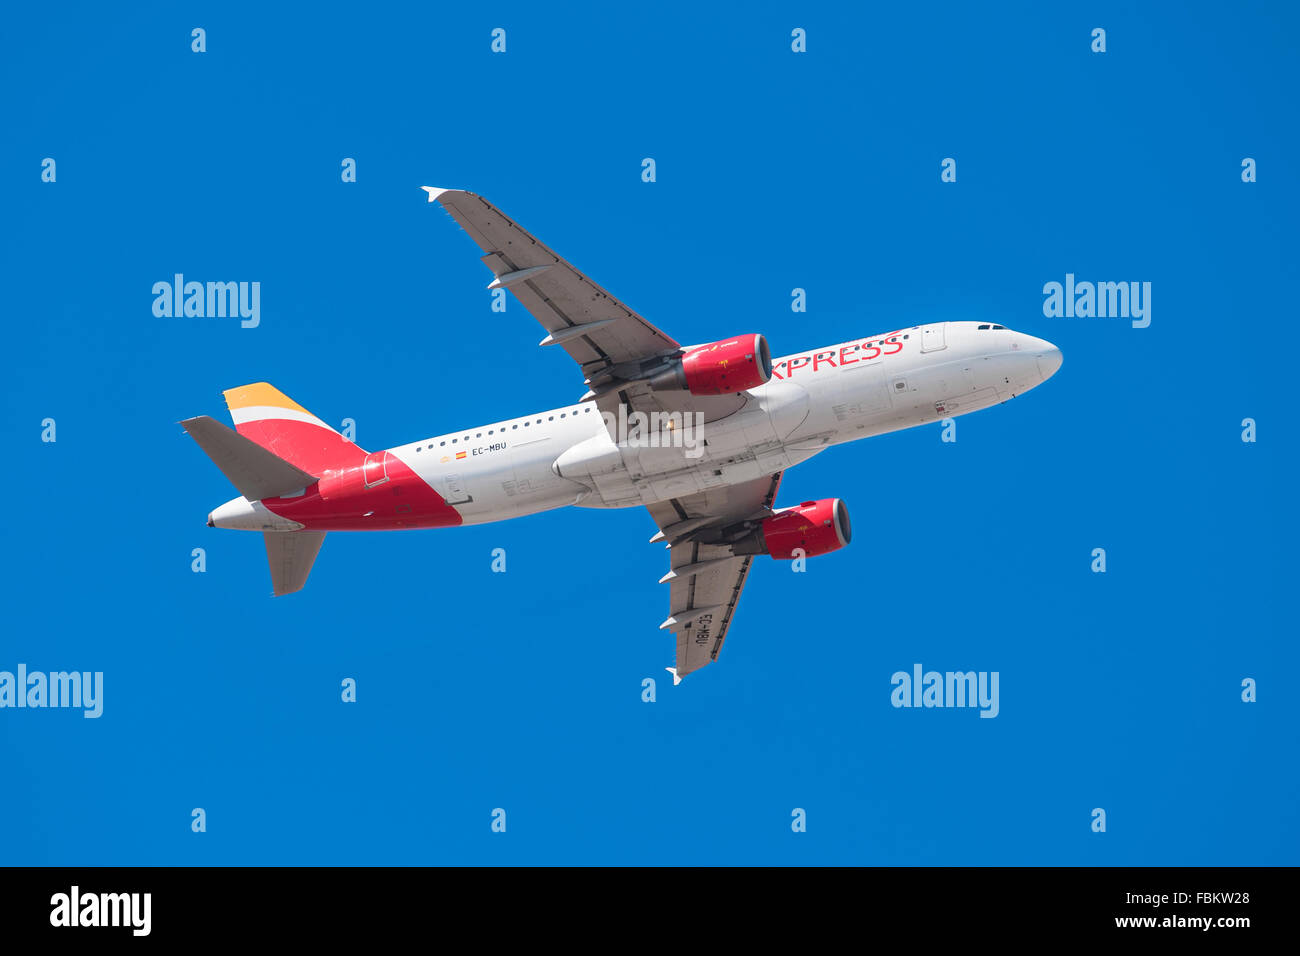 Iberia airlines immagini e fotografie stock ad alta risoluzione - Alamy